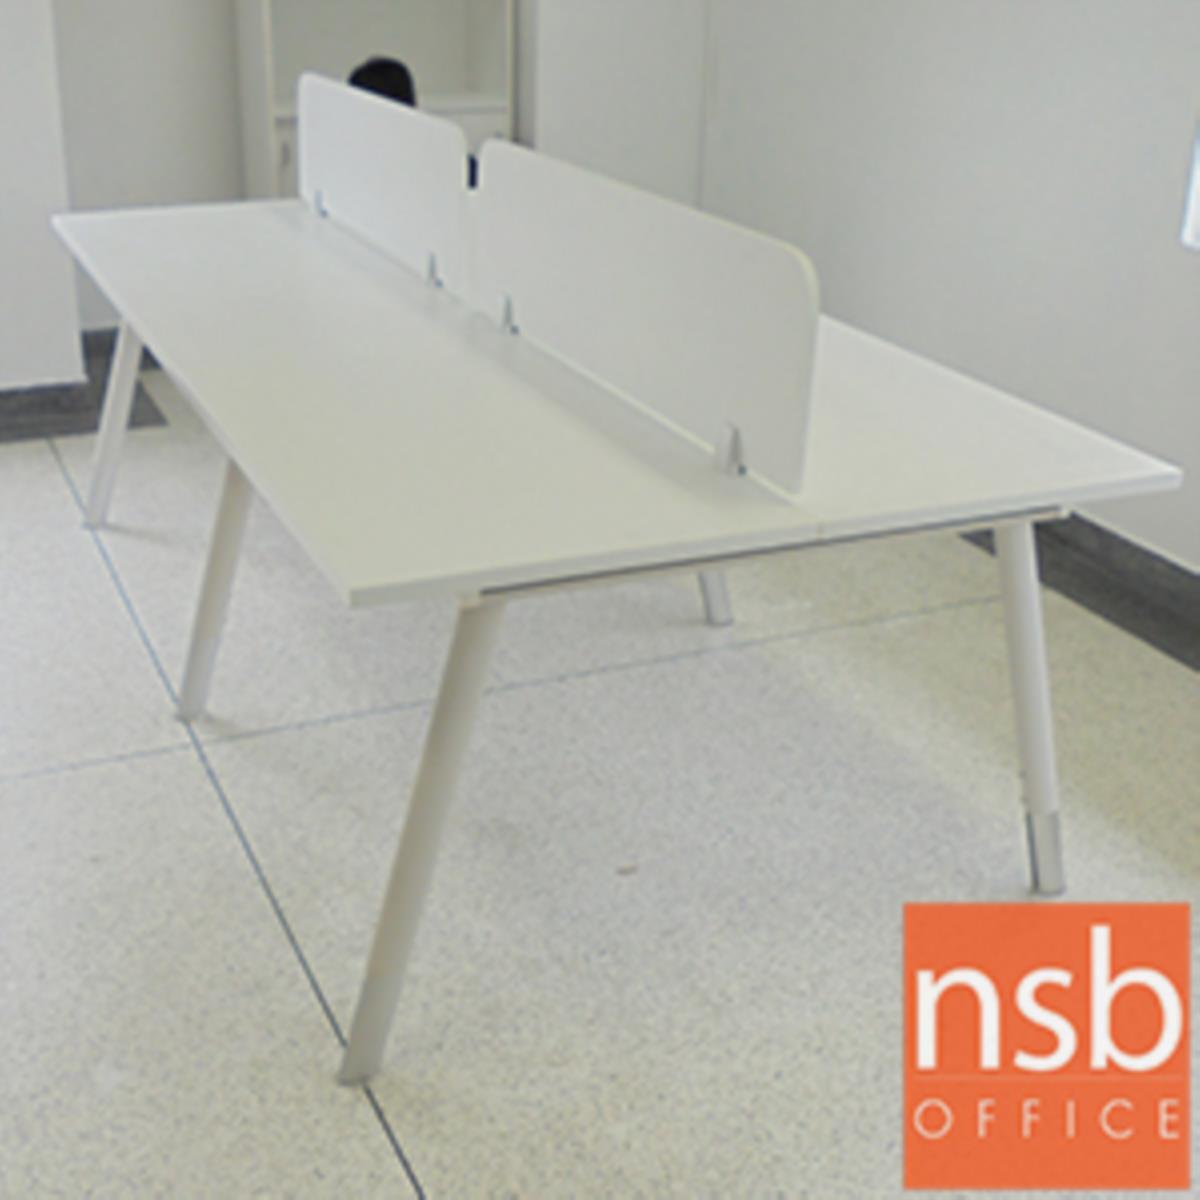 ชุดโต๊ะทำงาน 4 ที่นั่ง  รุ่น Brenton (เบรนตัน) ขนาด 240W*120D cm. พร้อมมินิสกรีนด้านหน้า